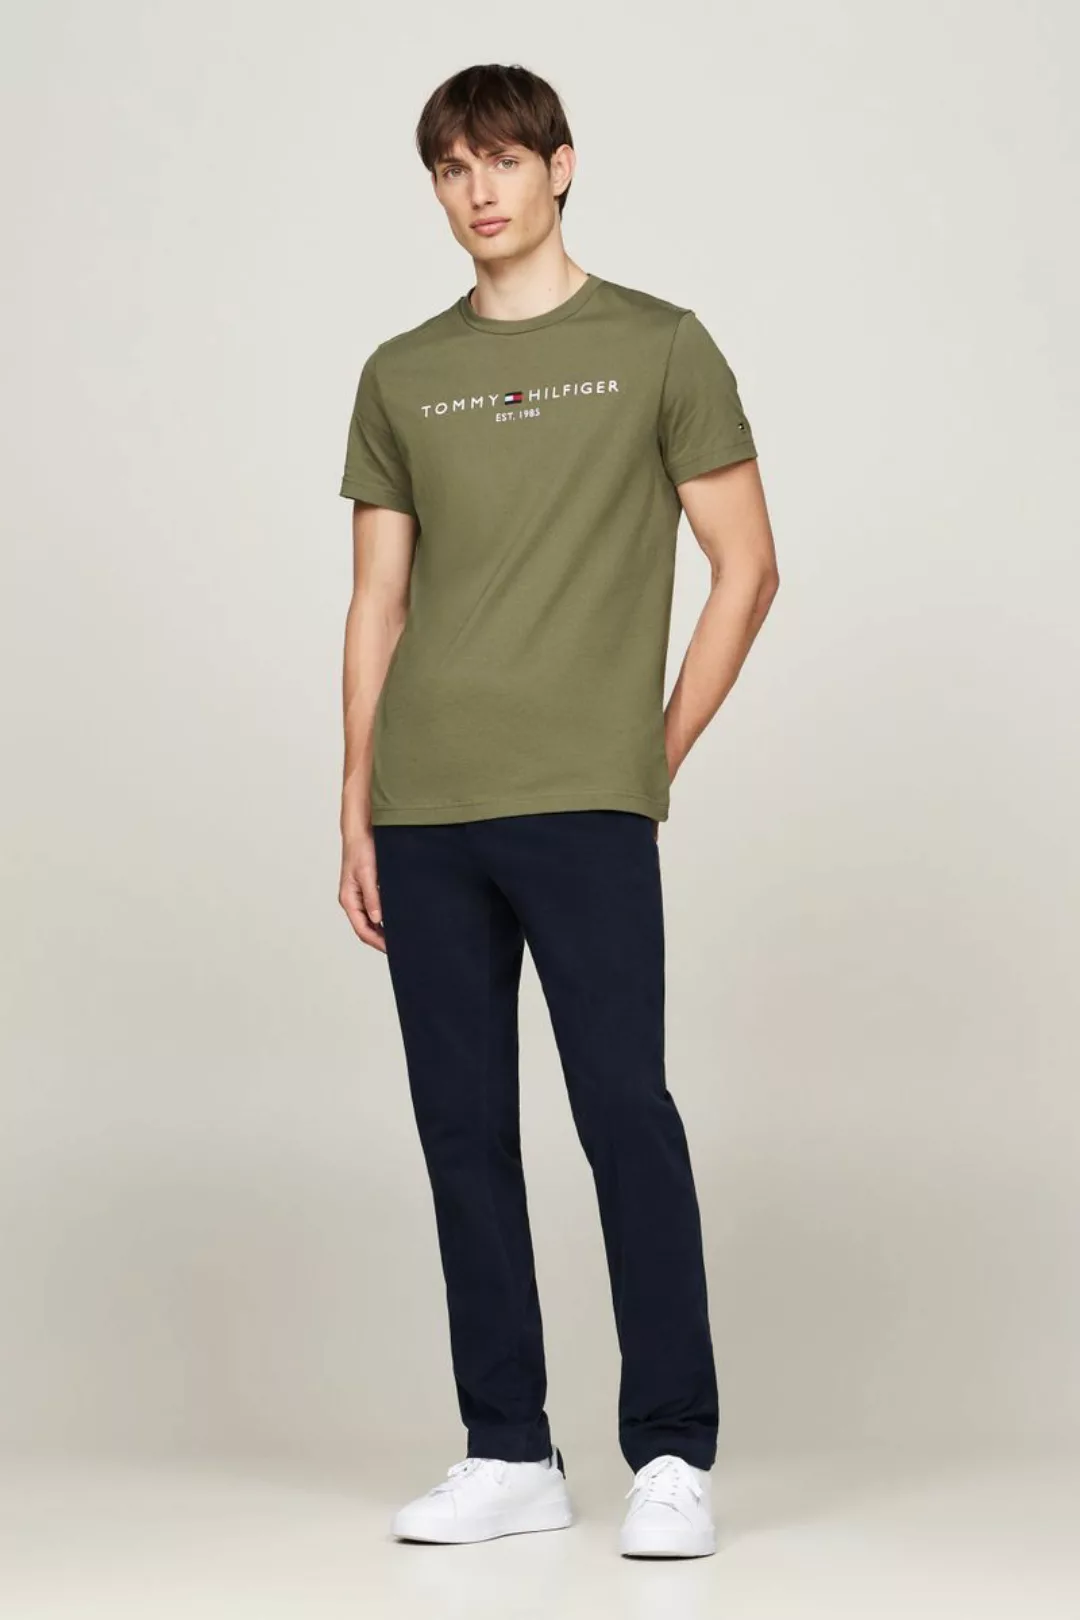 Tommy Hilfiger T-shirt Logo Olivgrün - Größe L günstig online kaufen